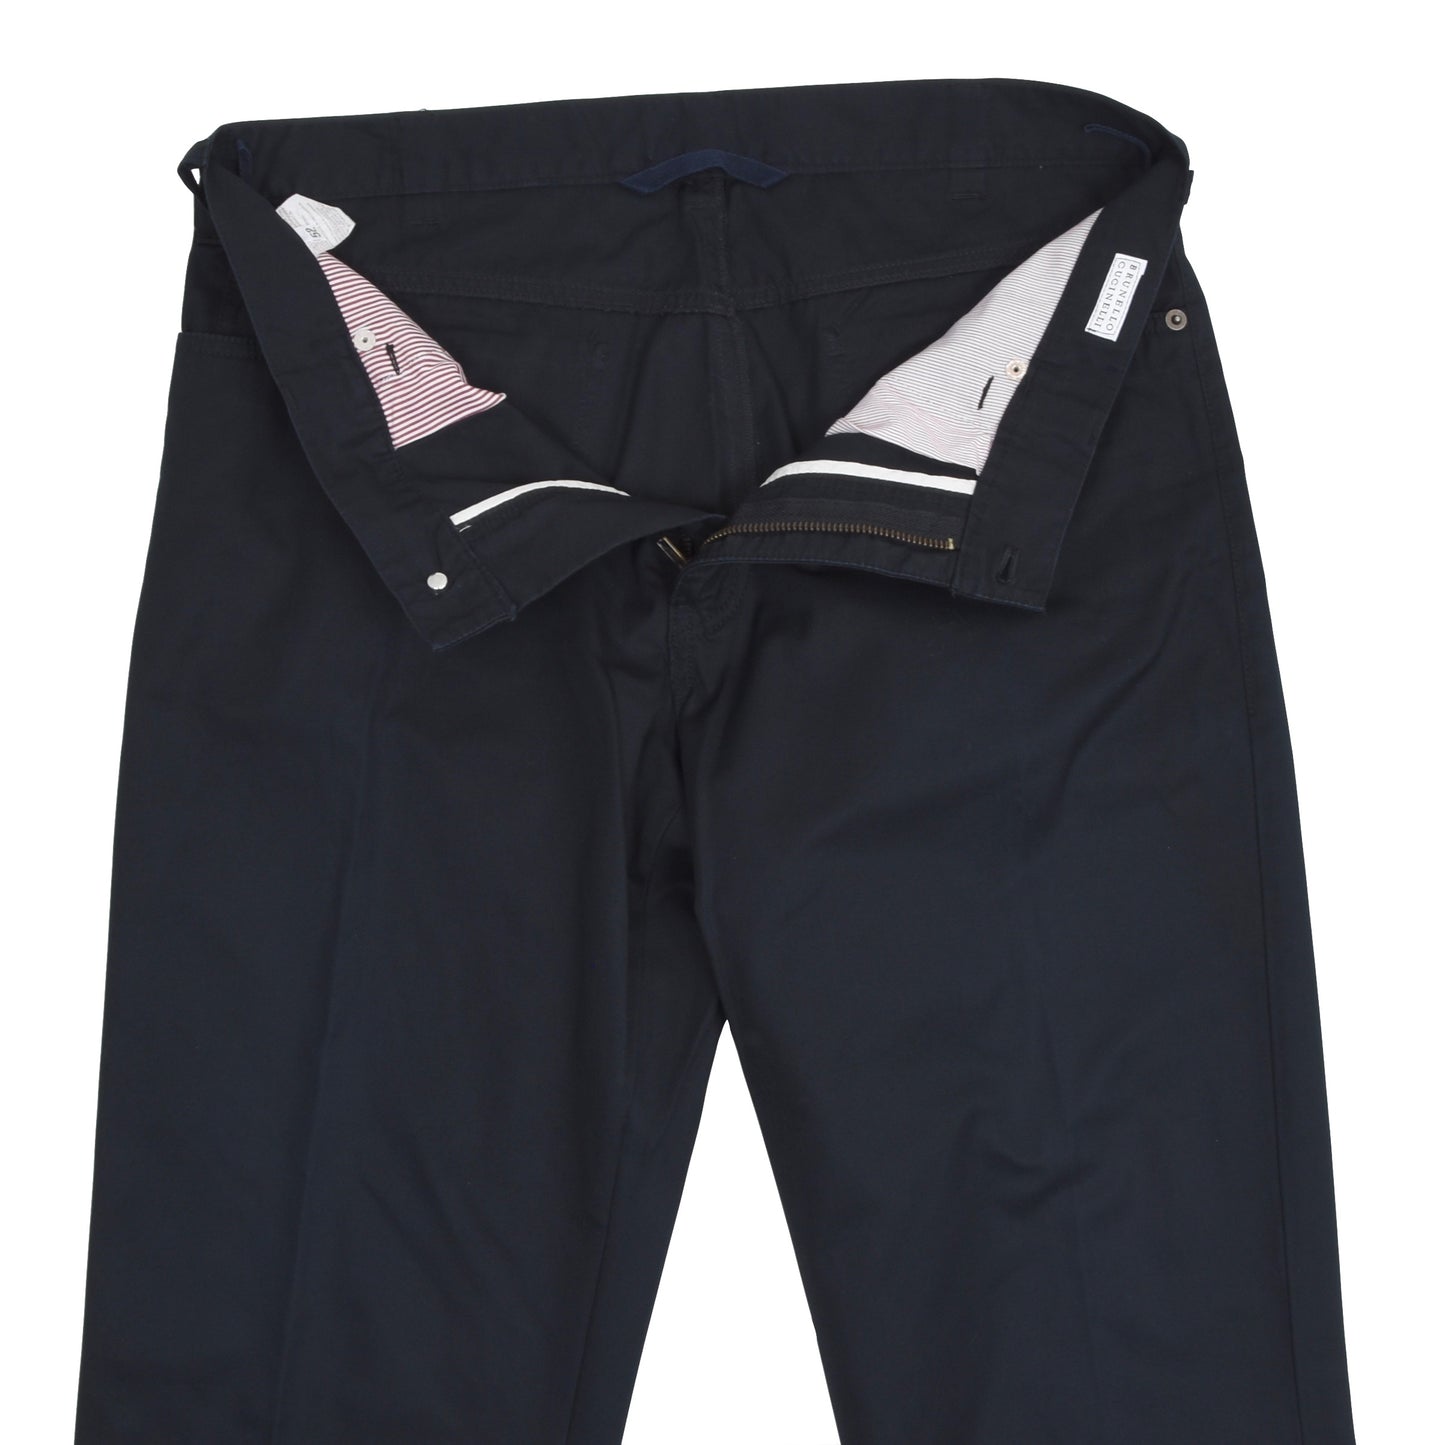 Brunello Cucinelli Cotton Pants Size 52 SHORT - Navy Blue